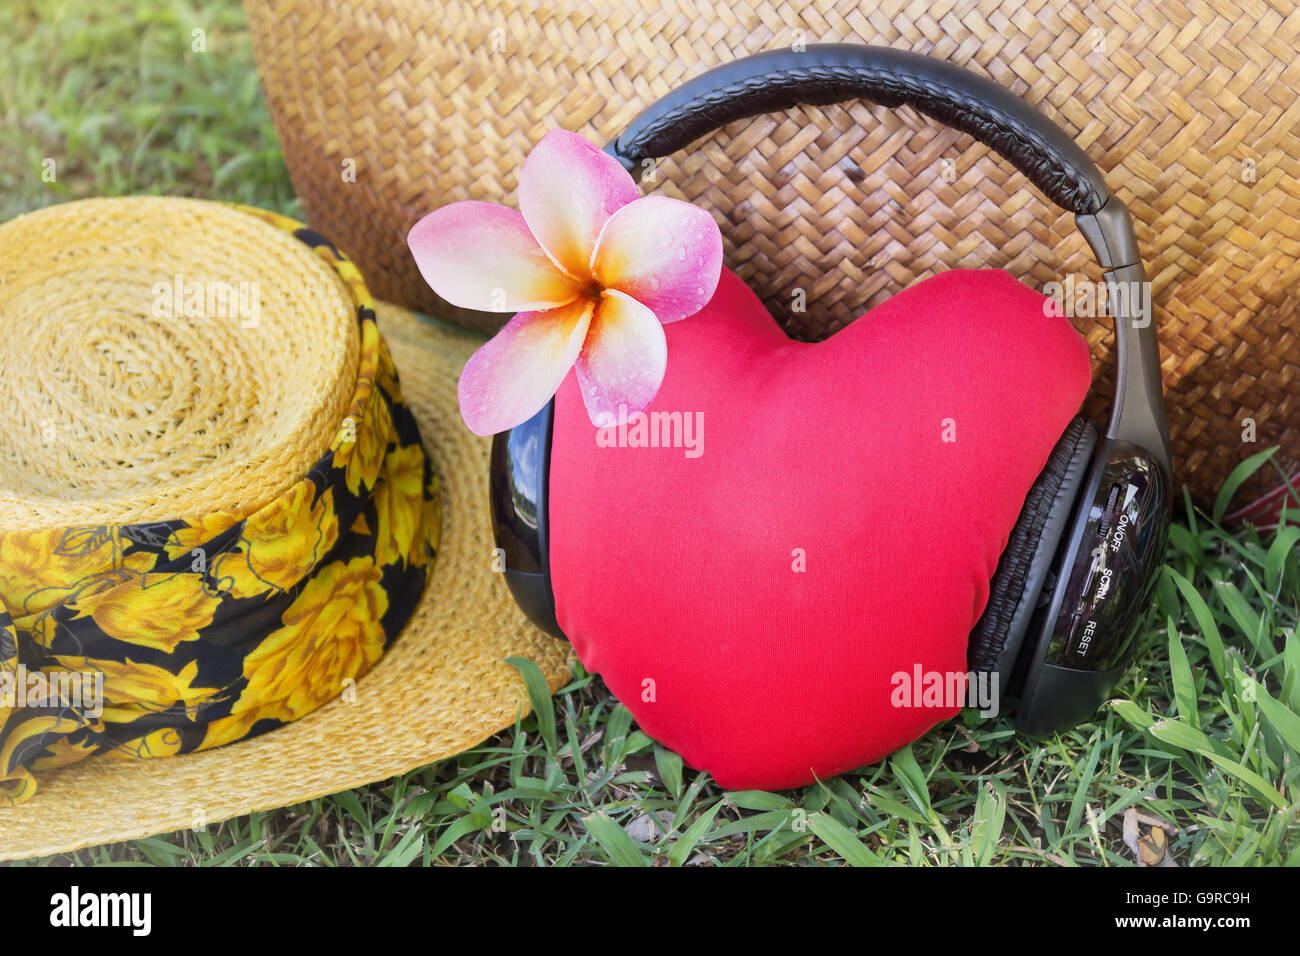 Cuore rosso ascoltare musica tramite cuffie con fiore rosa frangipani o plumeria e estate hat e borsa in background con relax Foto Stock